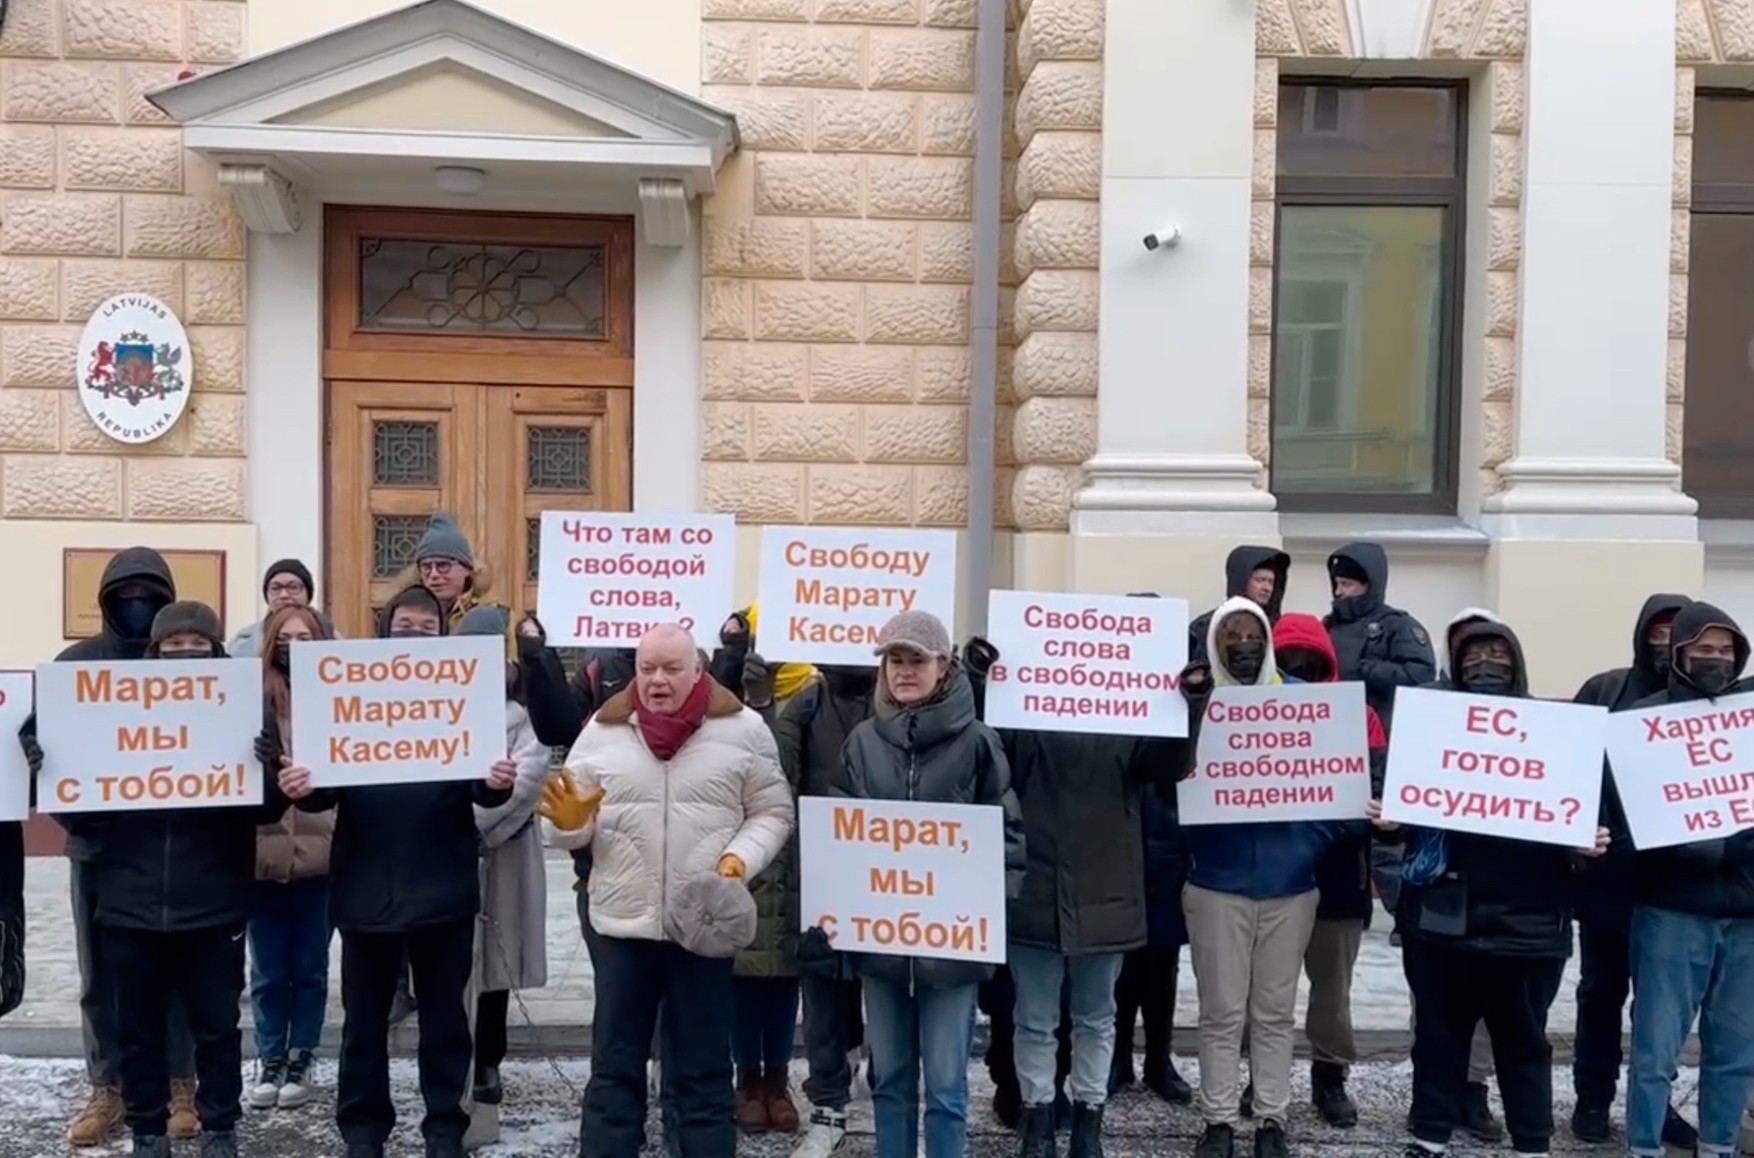 Киселев, Бутина и неизвестные люди в масках пришли к посольству Латвии требовать свободы слова